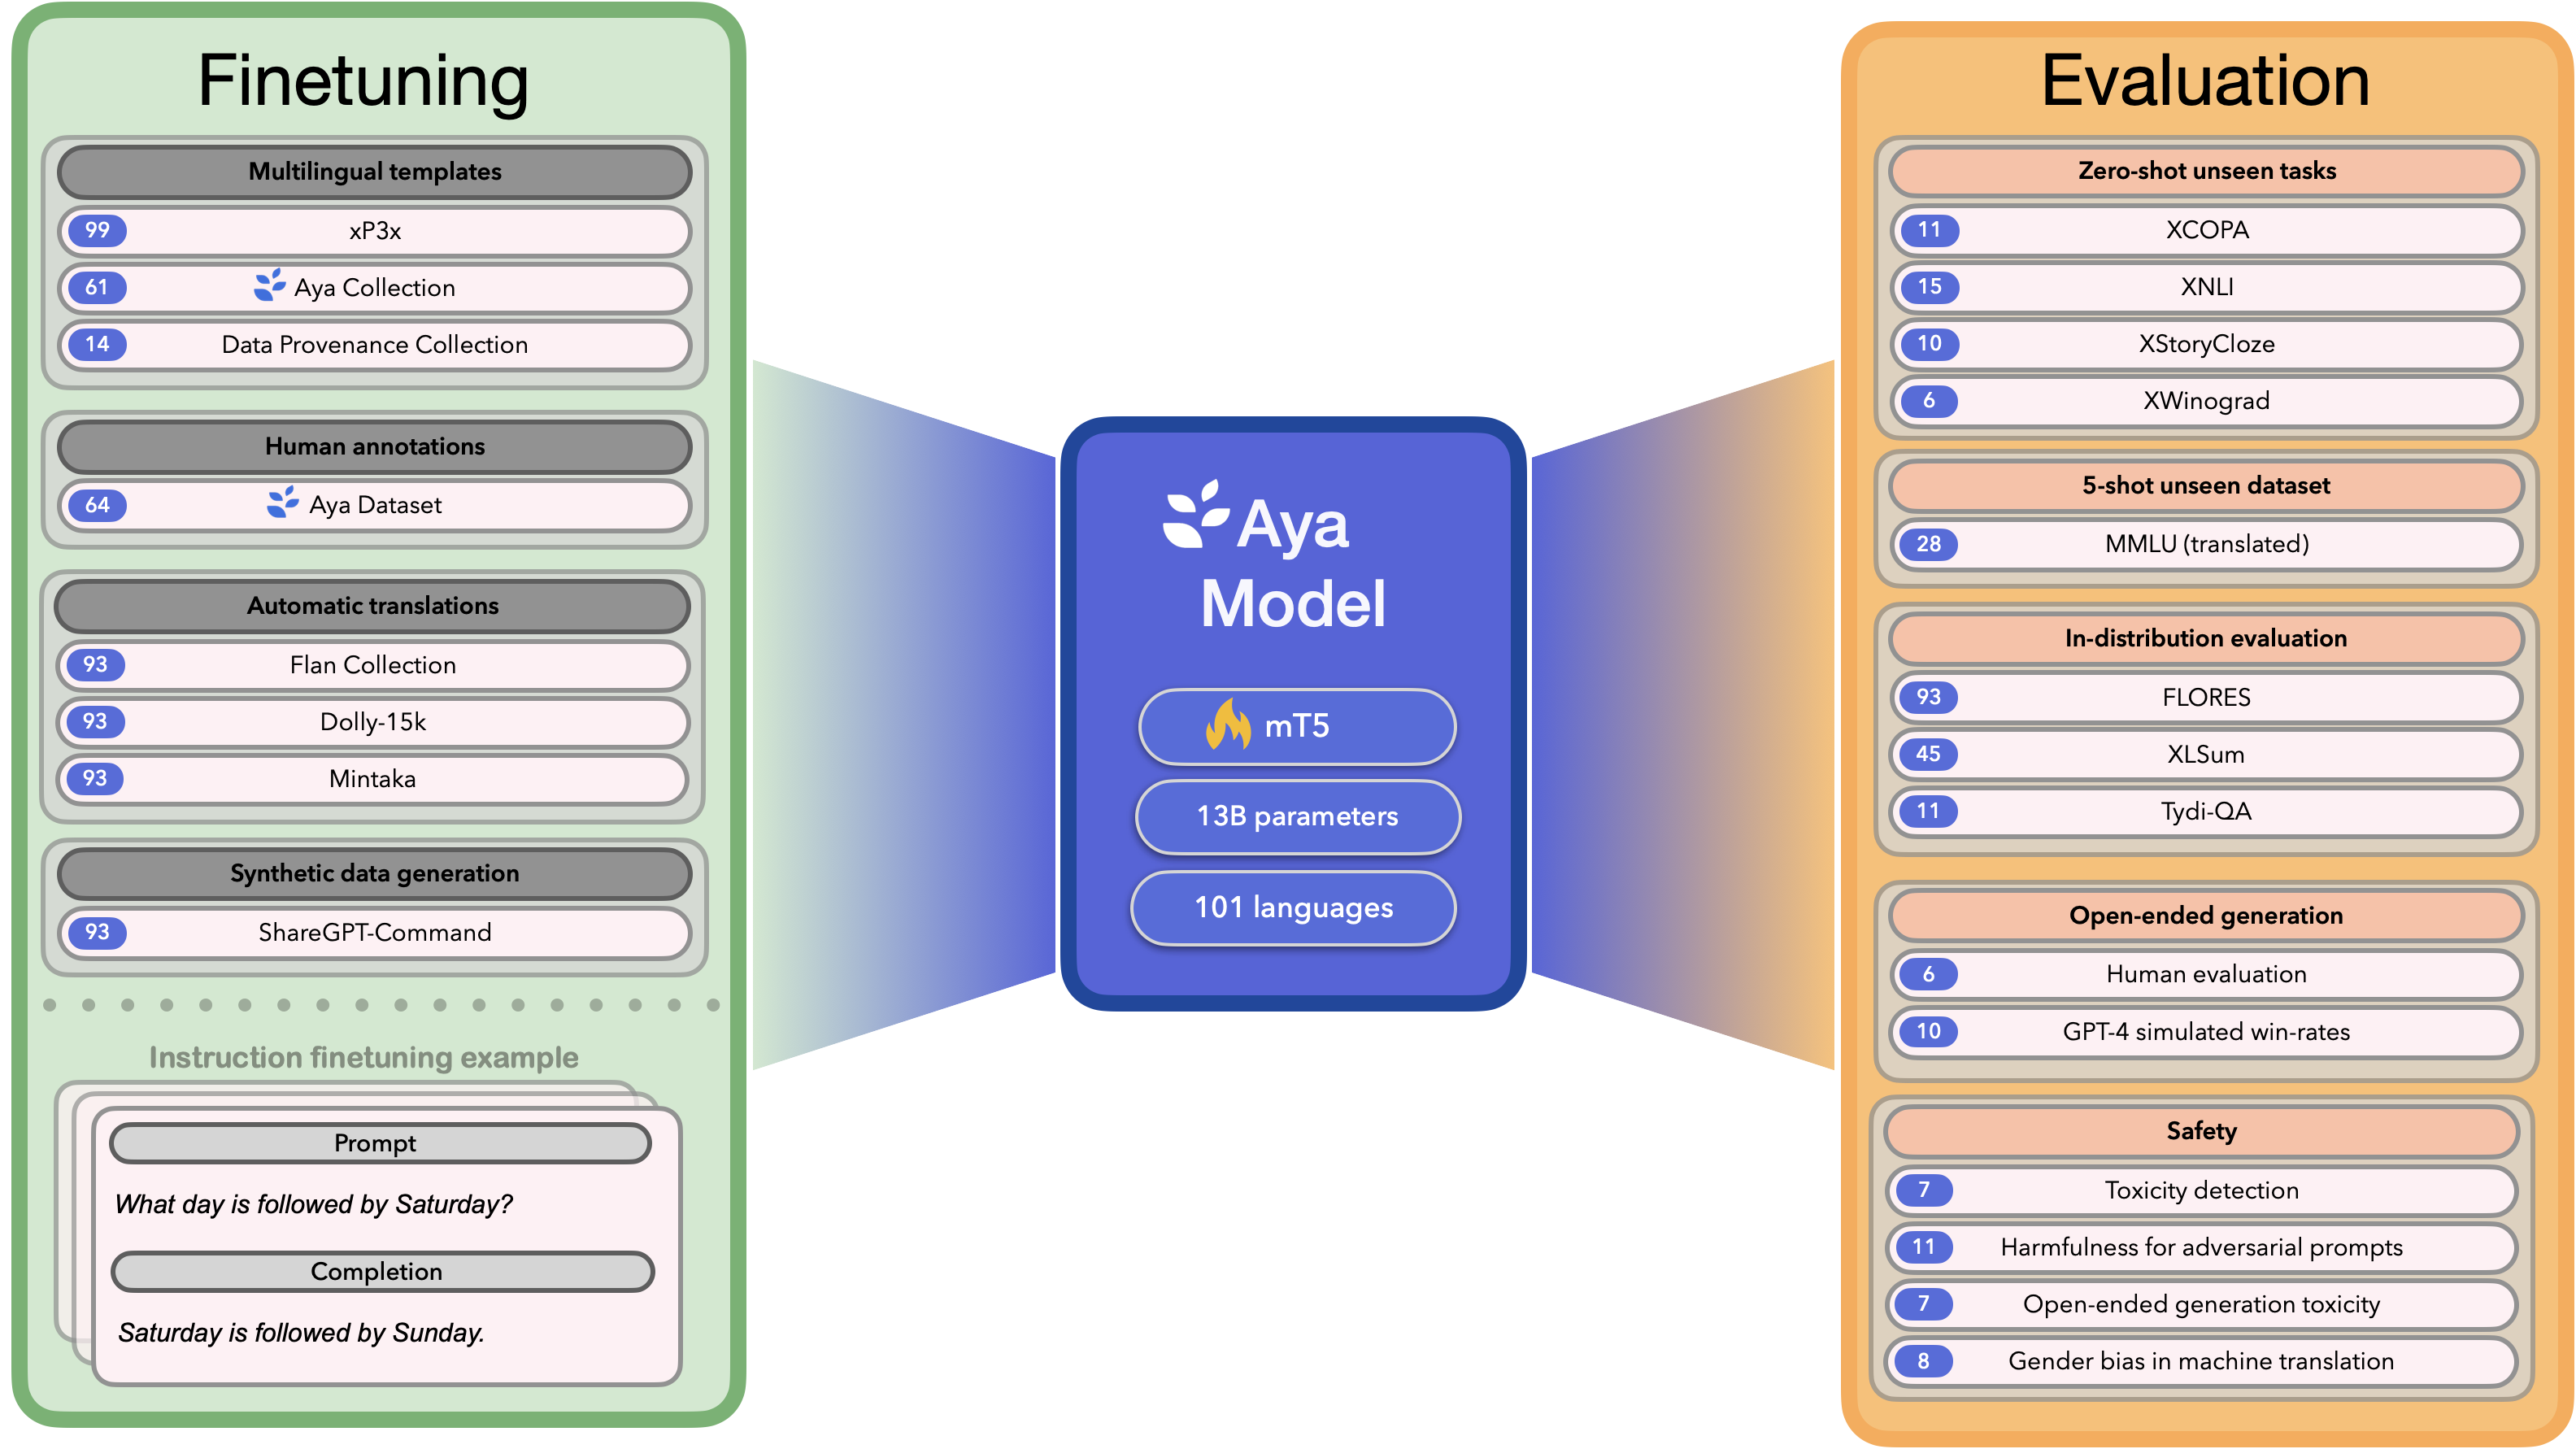 Aya model summary image